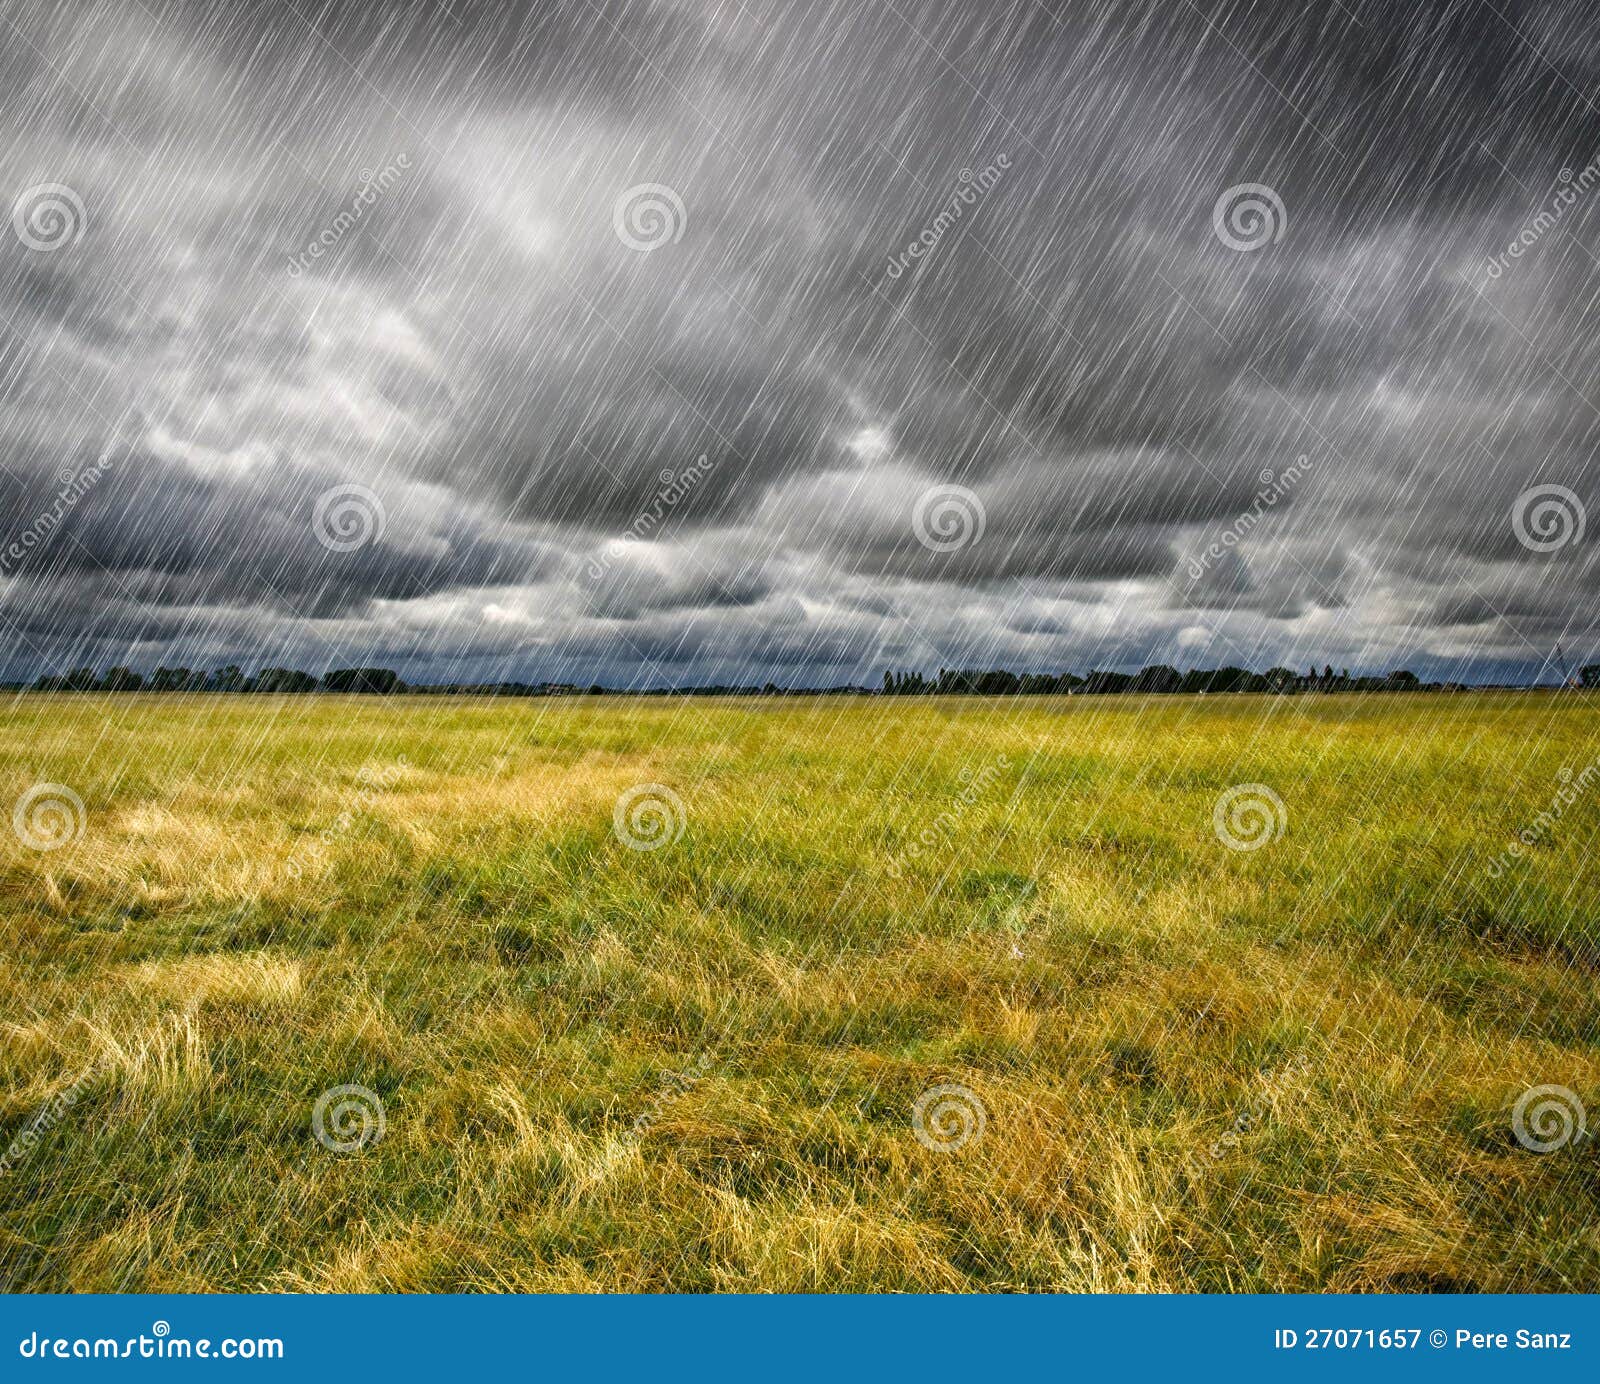 heavy rain over a prairie